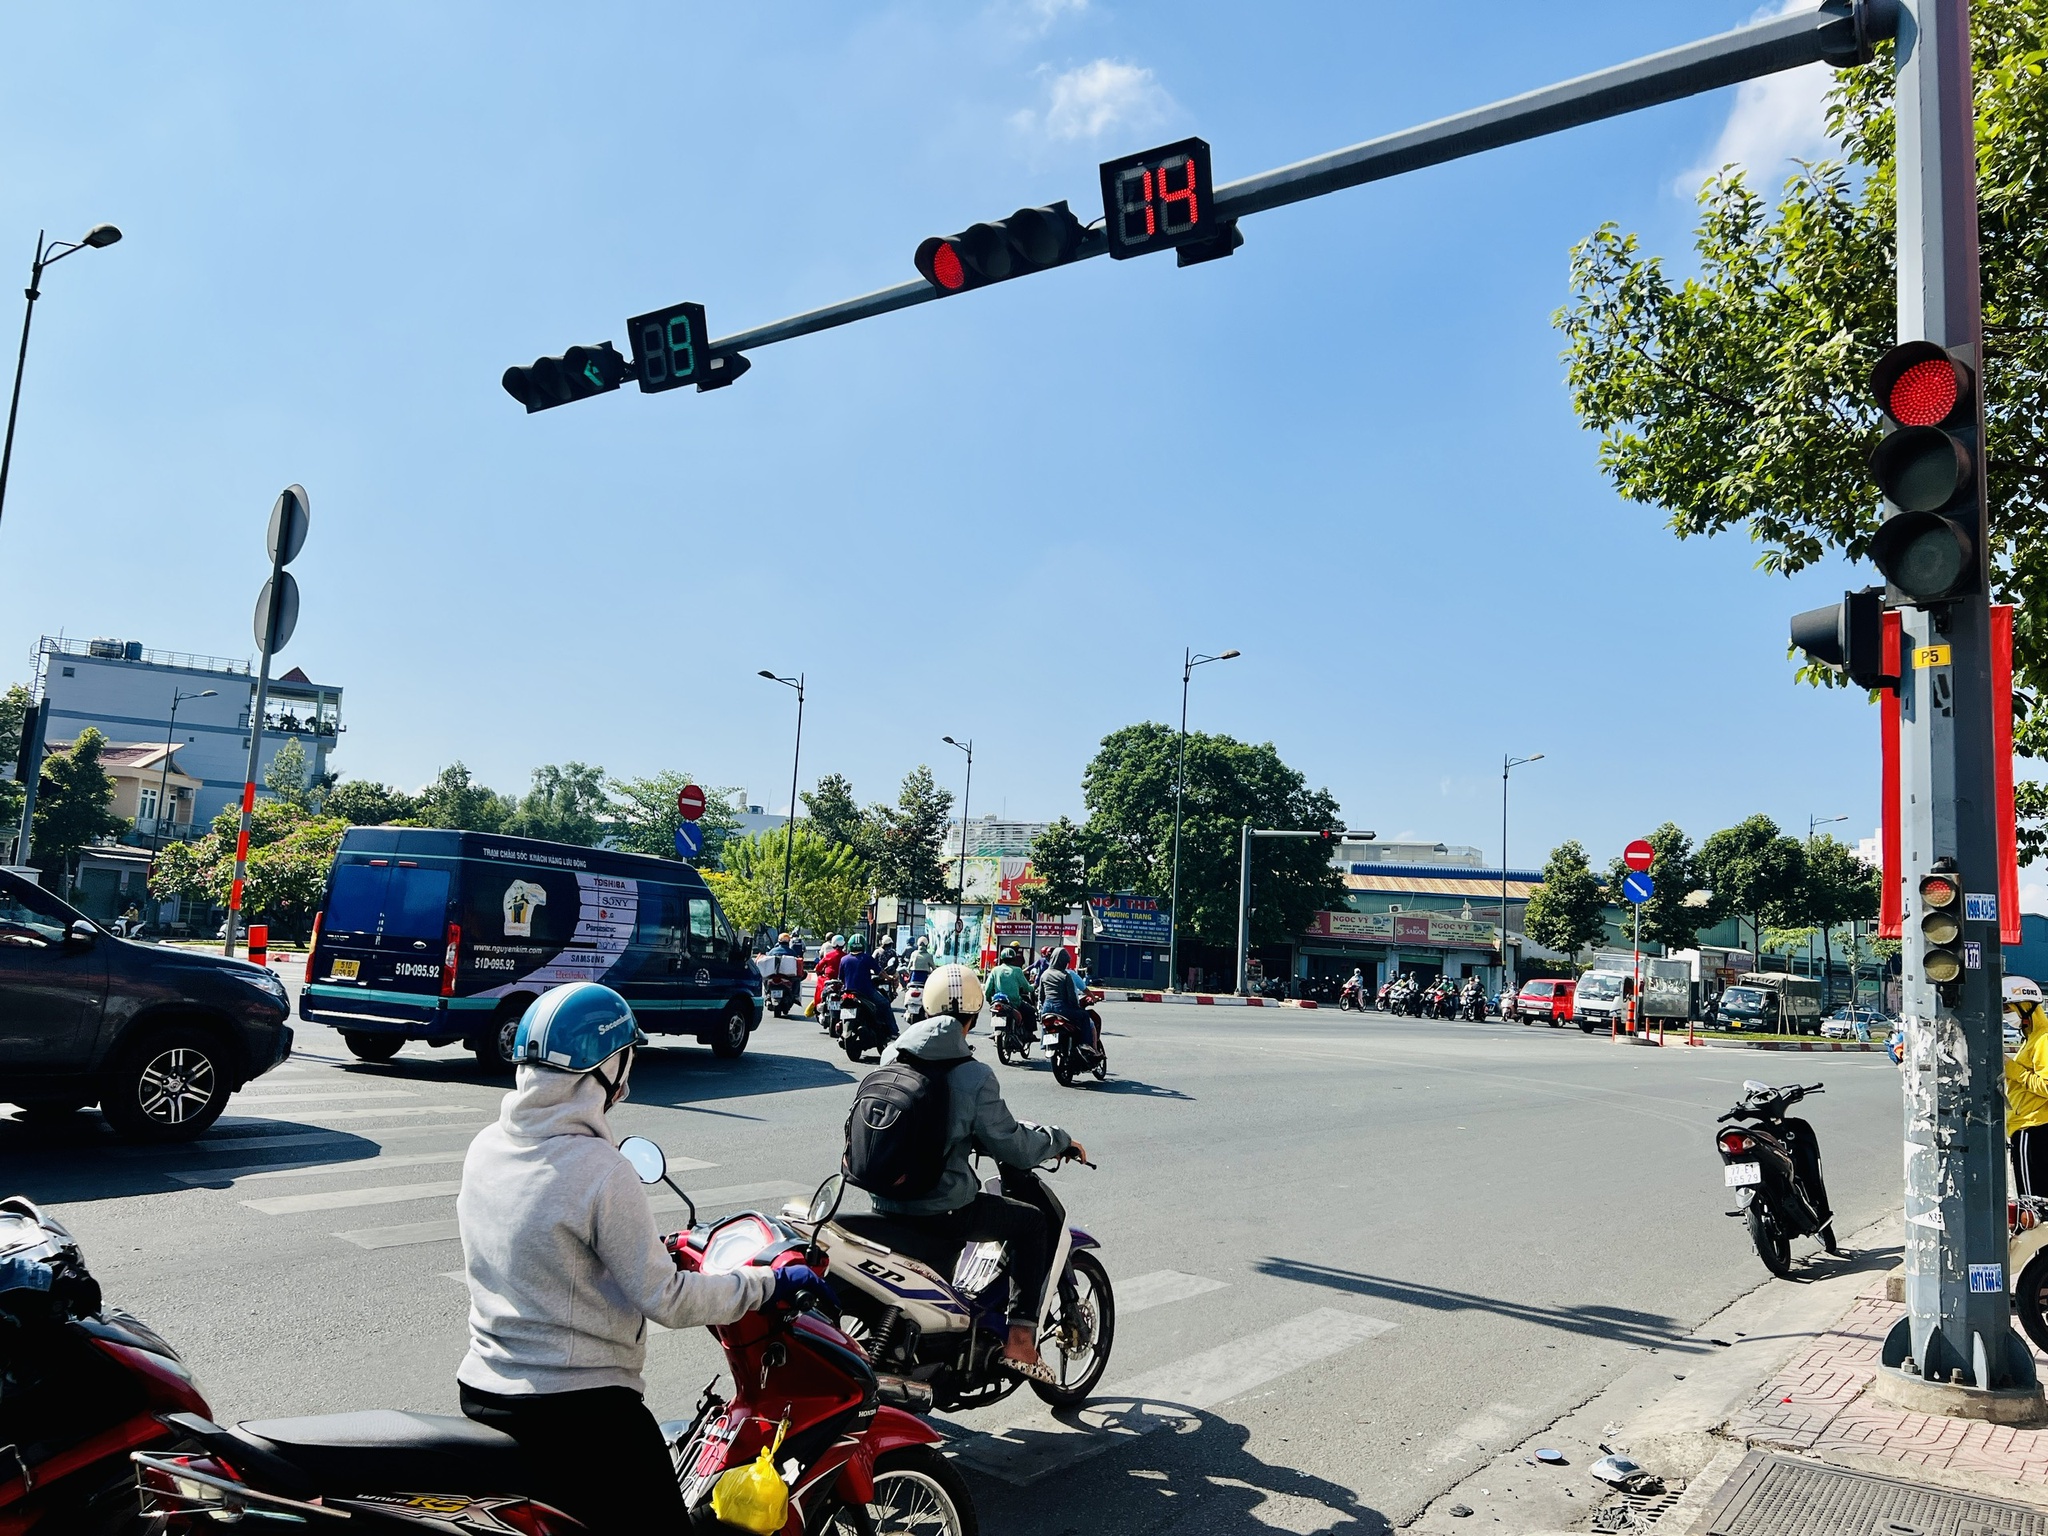 An toàn giao thông là điều người dân Việt Nam đang quan tâm hàng đầu. Với những hình ảnh cảnh báo, giảng dạy về an toàn giao thông và ý thức kế thừa nền văn hoá đường phố, chúng tôi hy vọng sẽ mang lại cho bạn và gia đình những kiến thức bổ ích và giá trị.